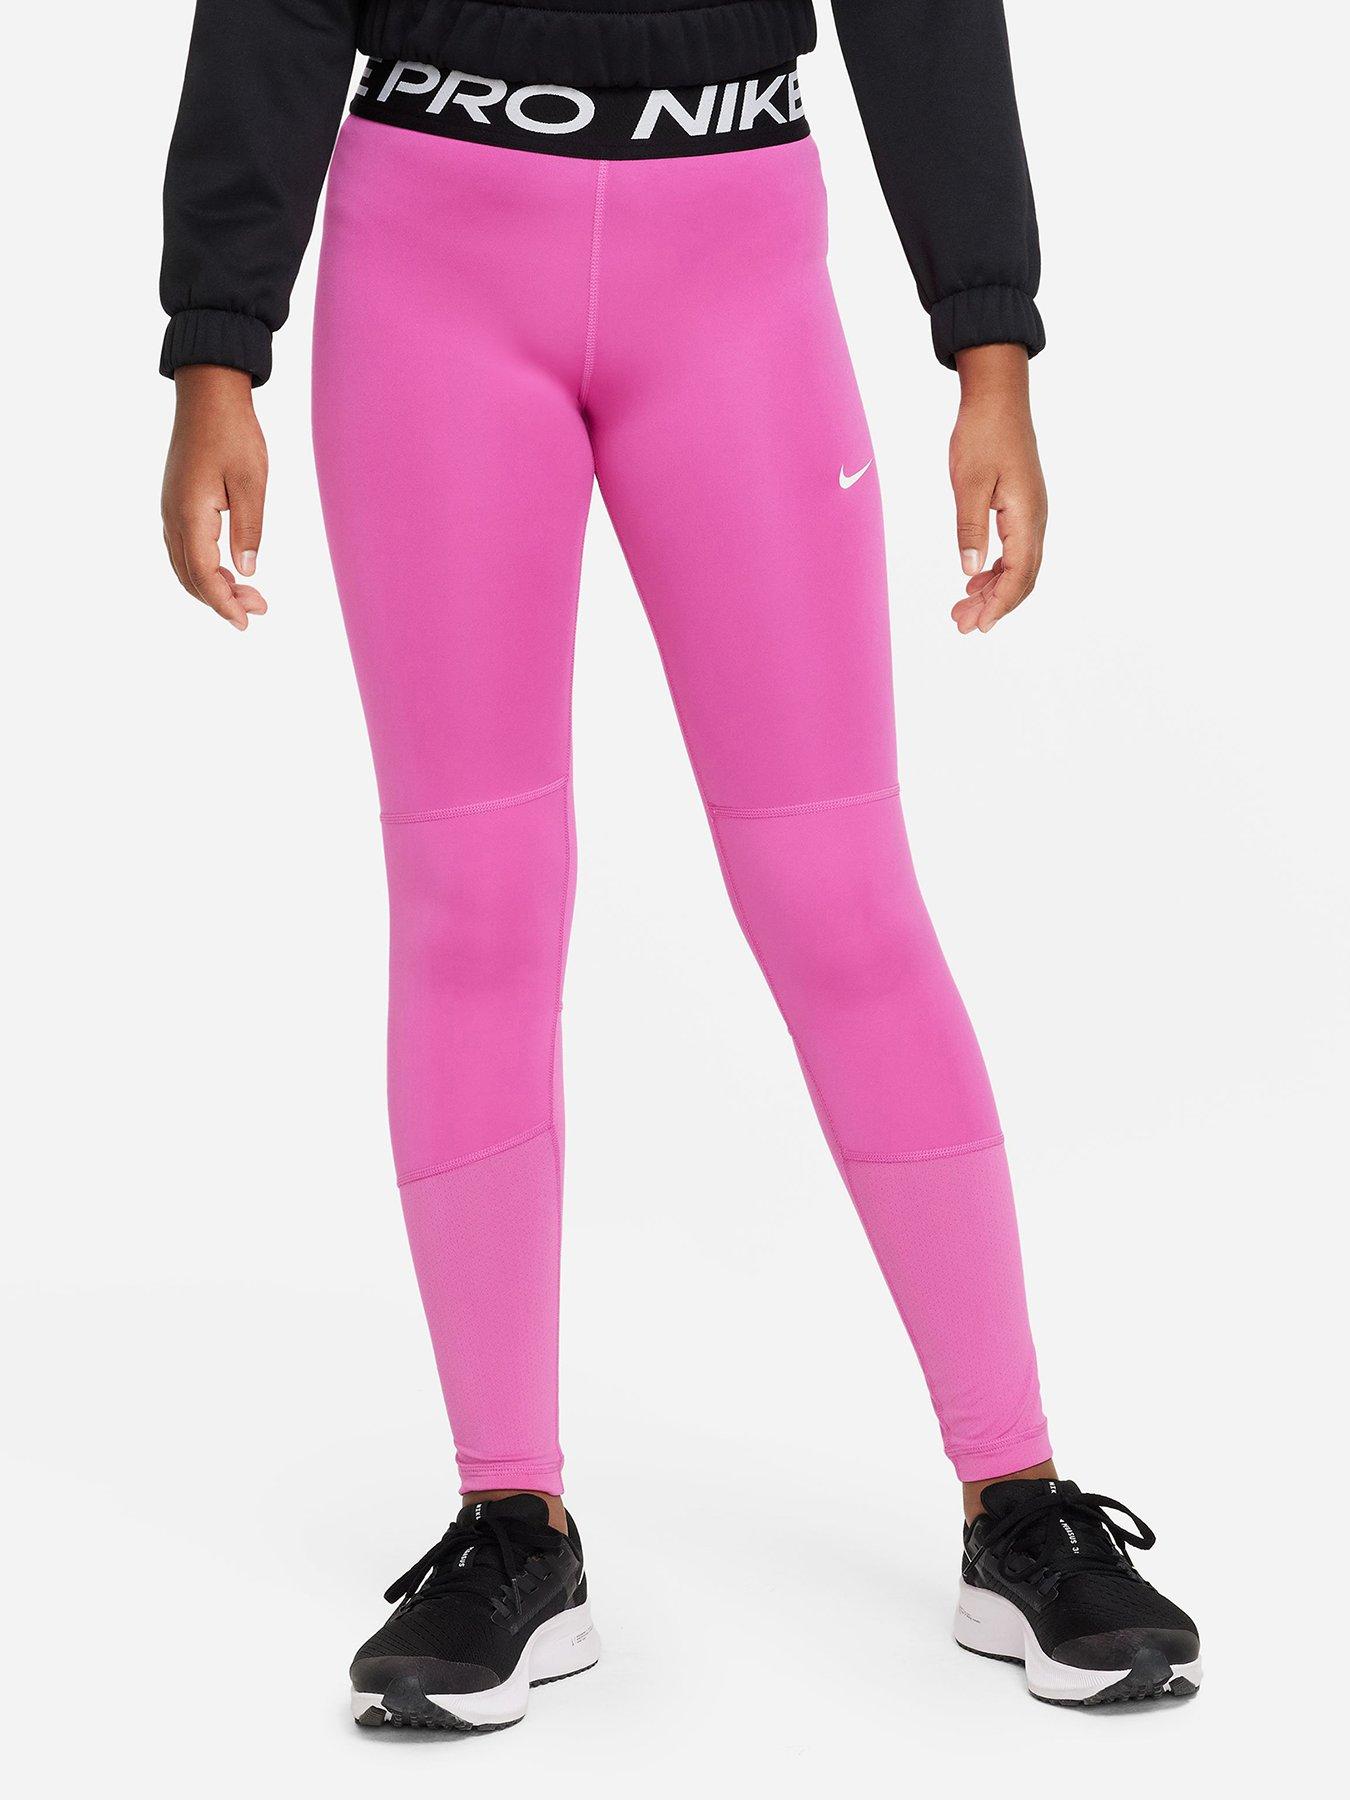 Nike Older Girls Pro Leggings - Pink